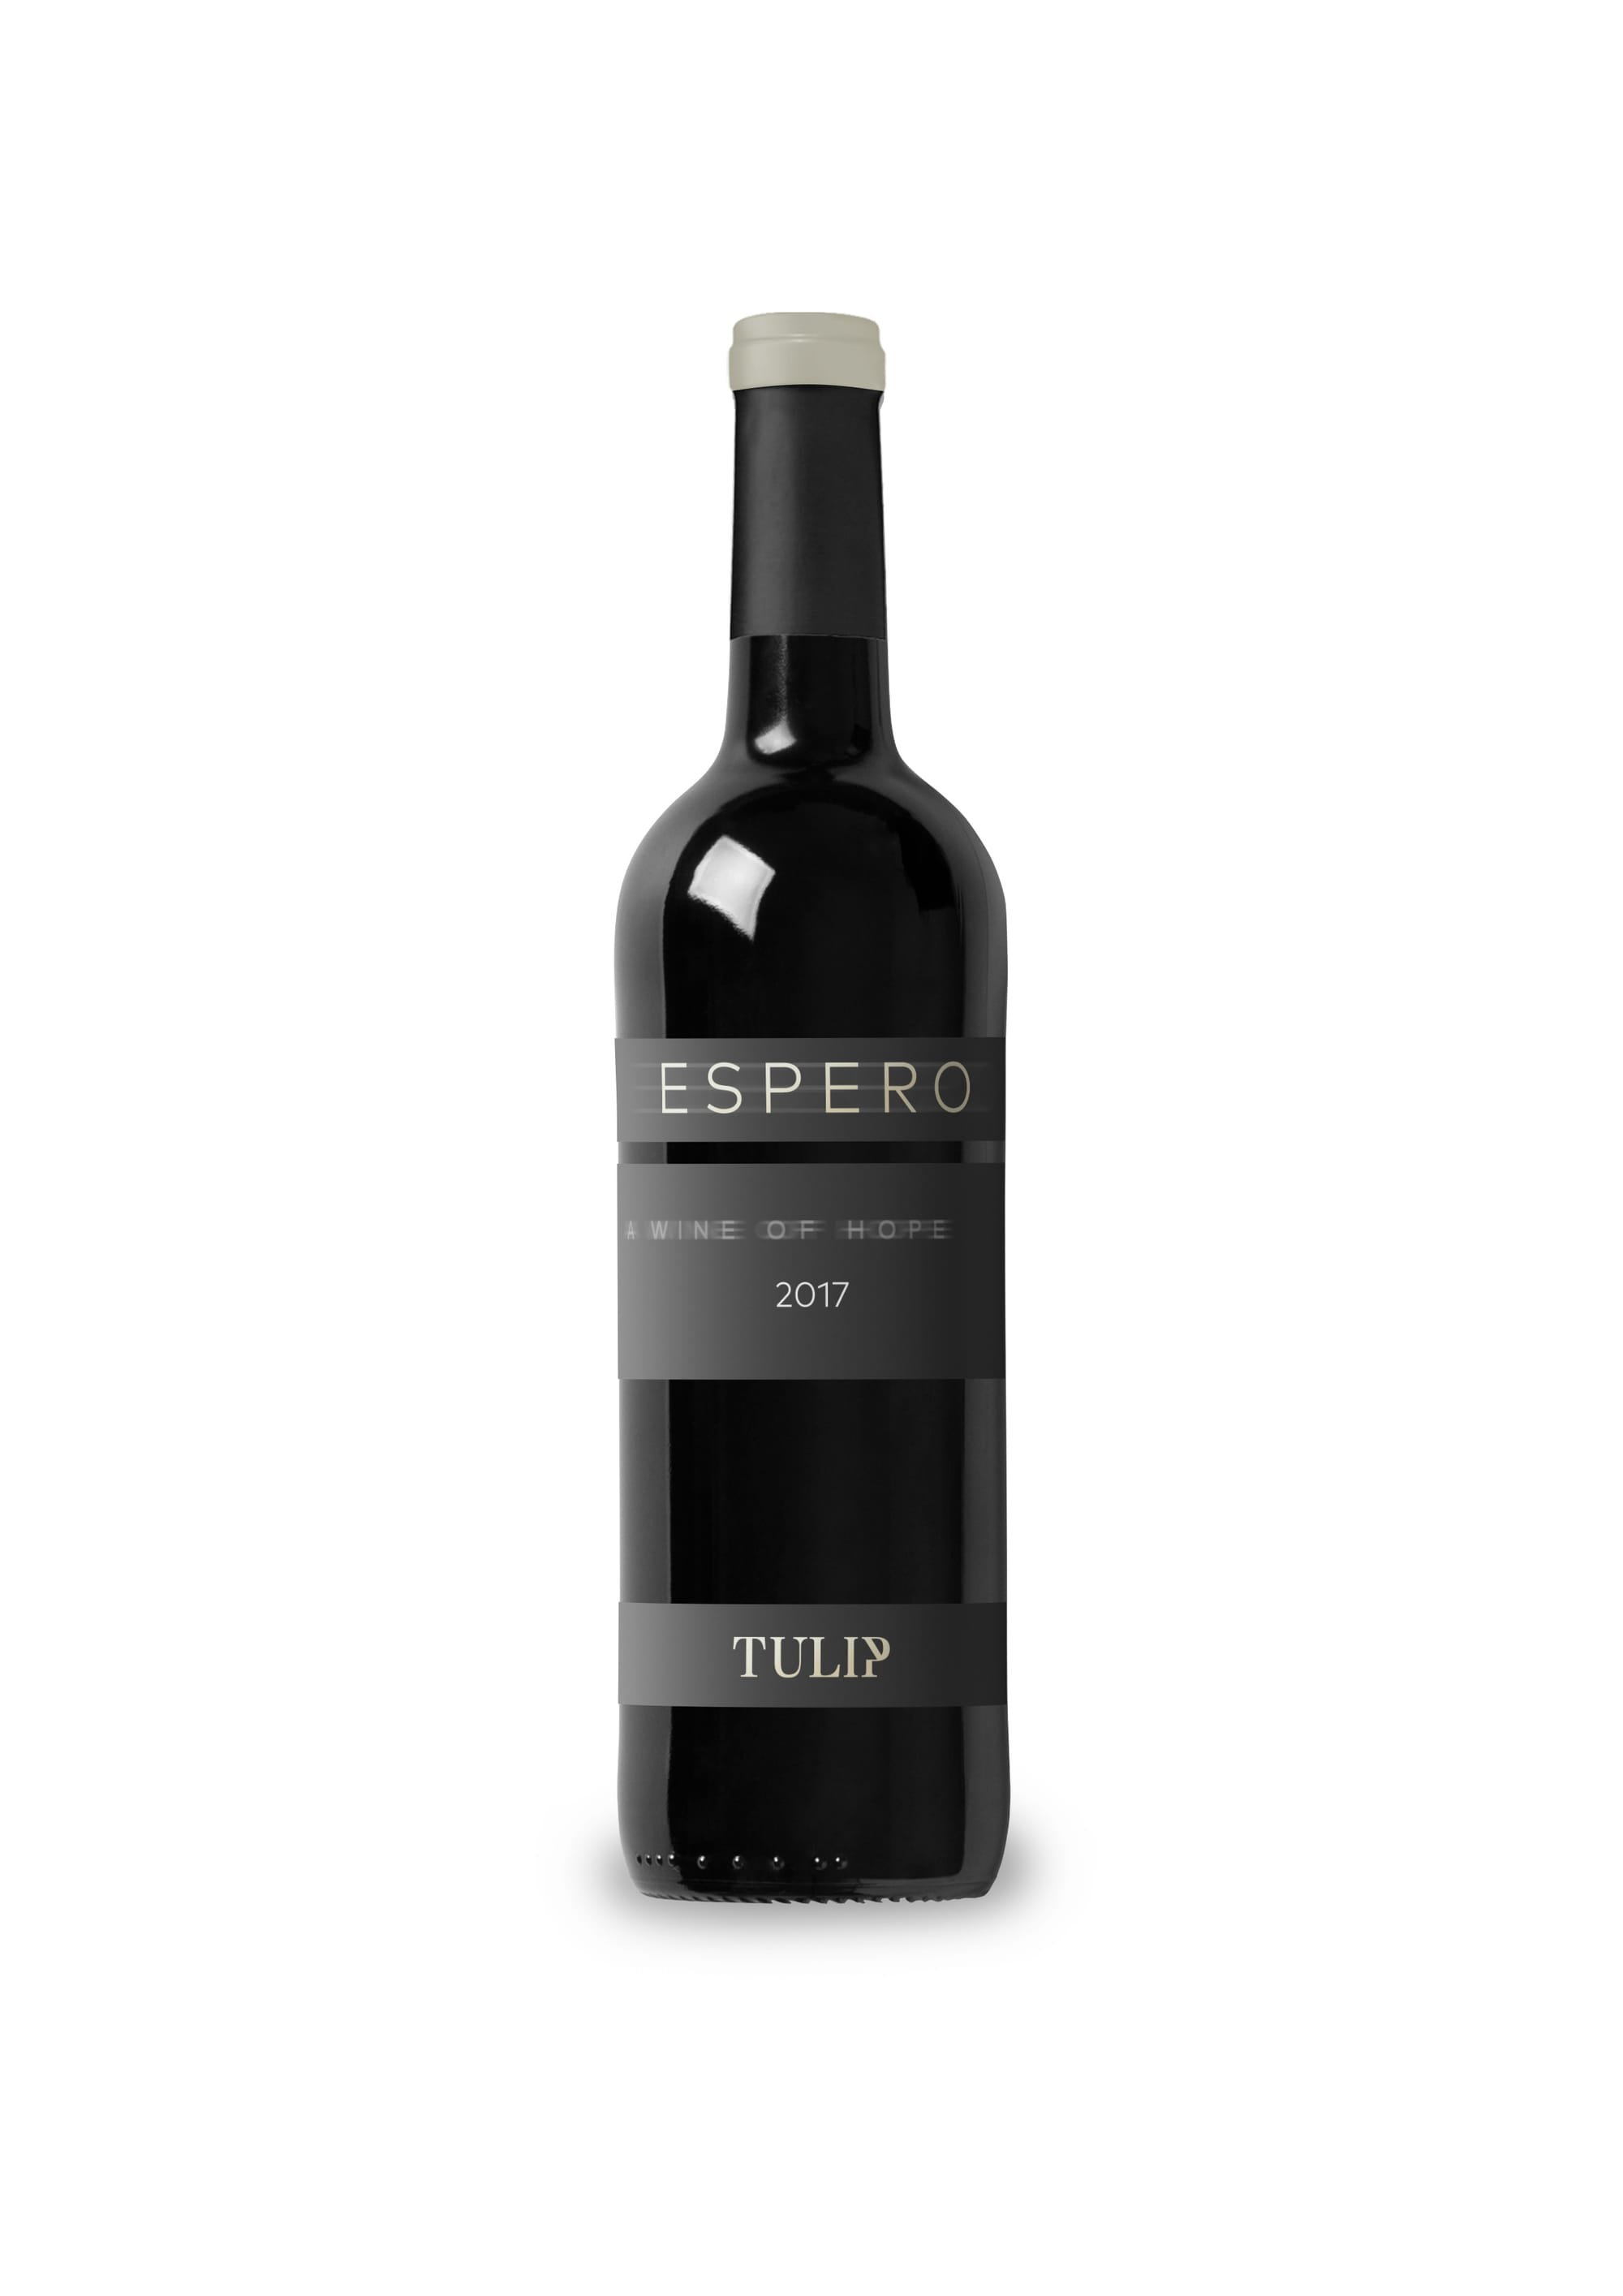 יקב טוליפ: יינות לפסח